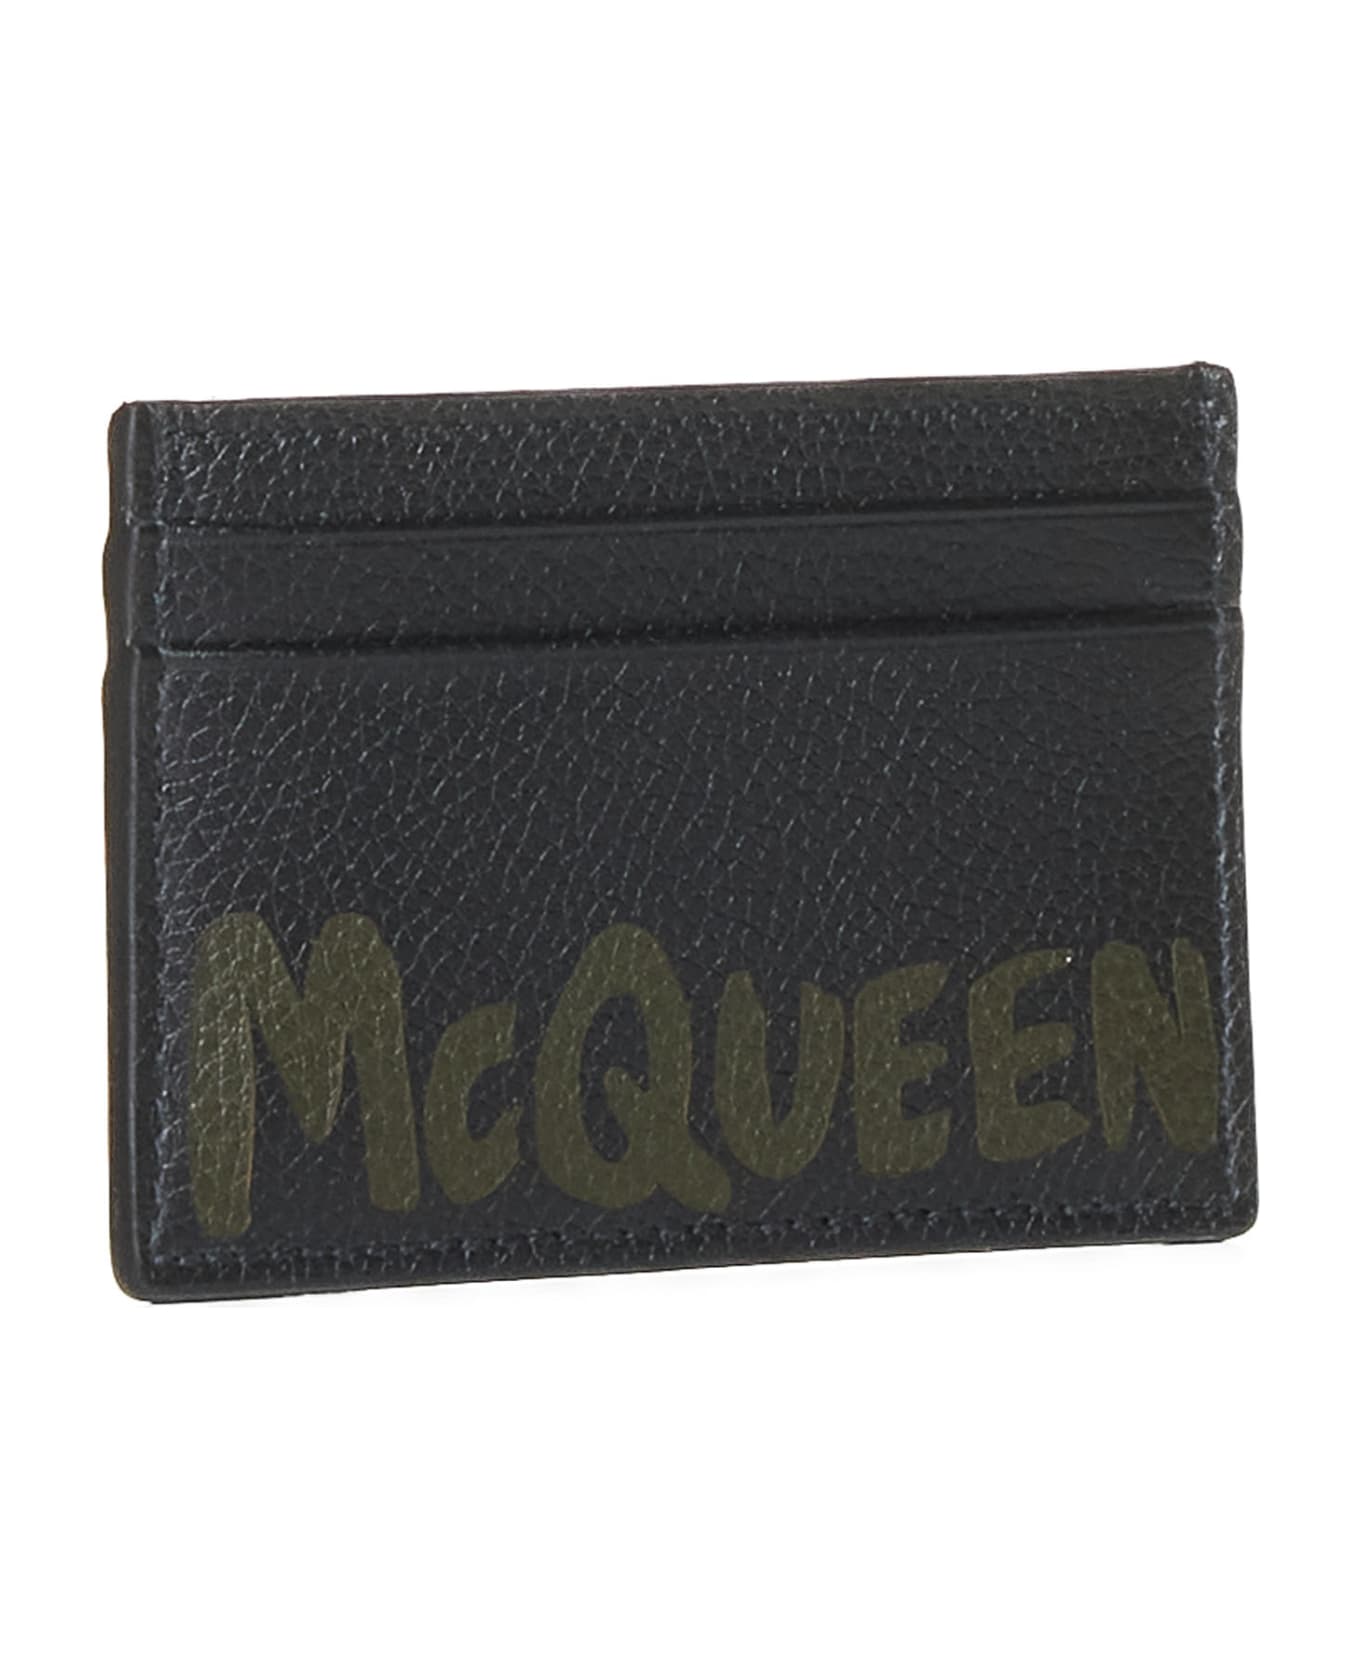 Alexander McQueen Wallet - Black/khaki